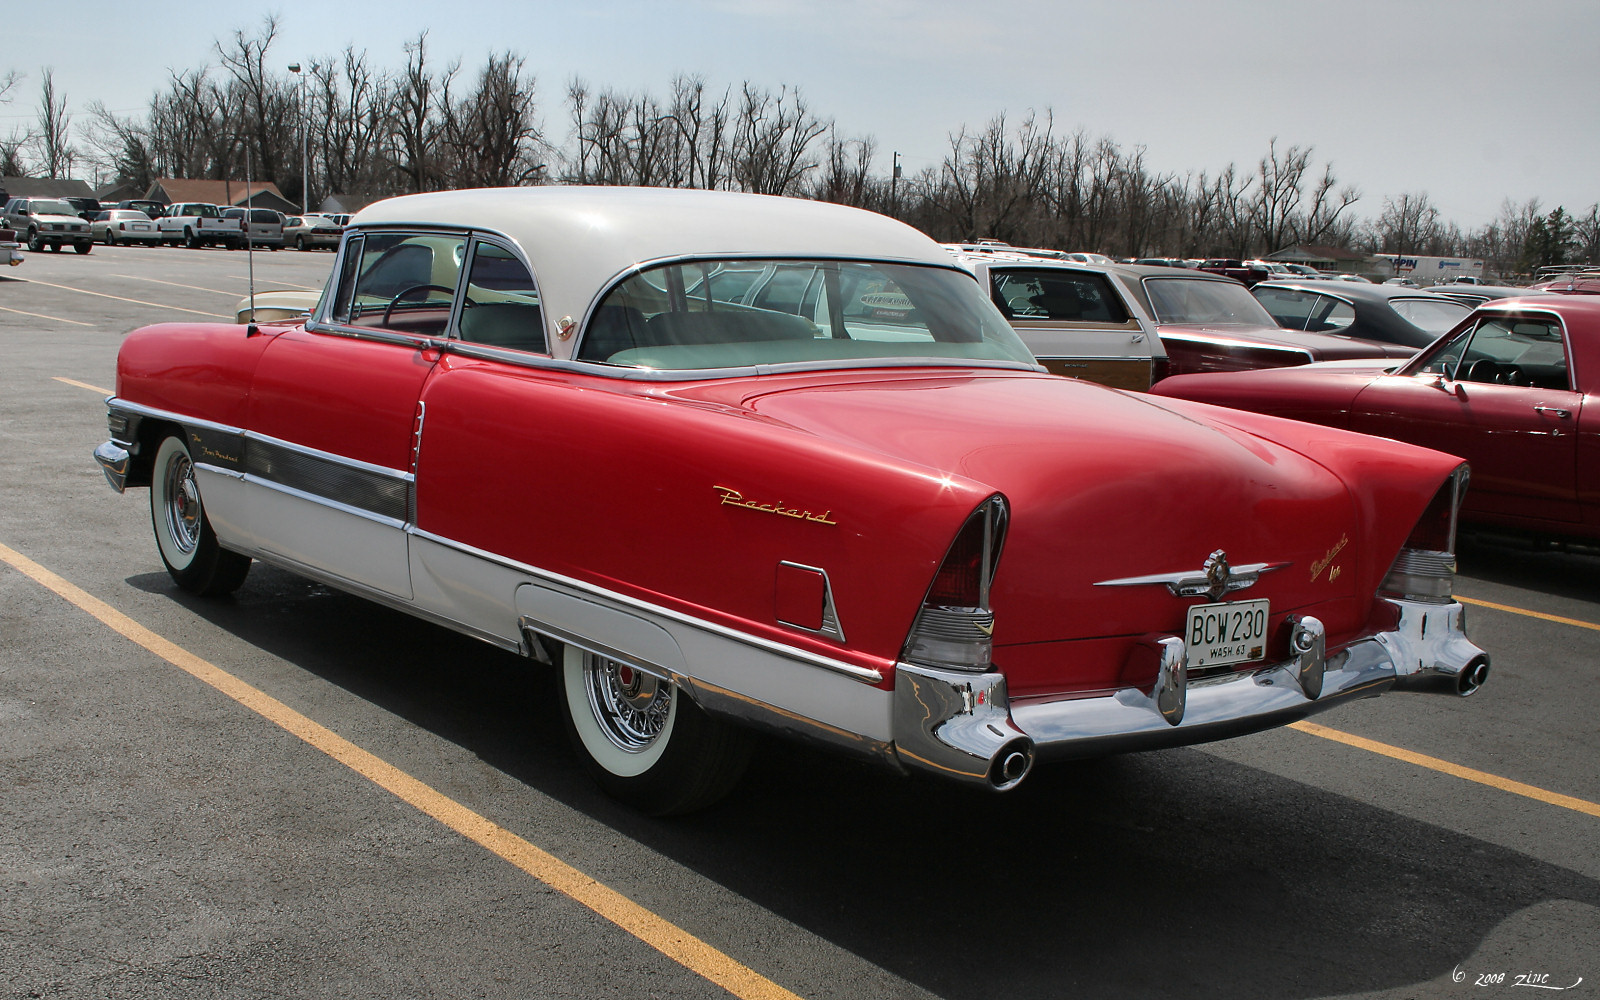 File:1955-Packard-400-2dr-HT-rear.jpg - Wikimedia Commons